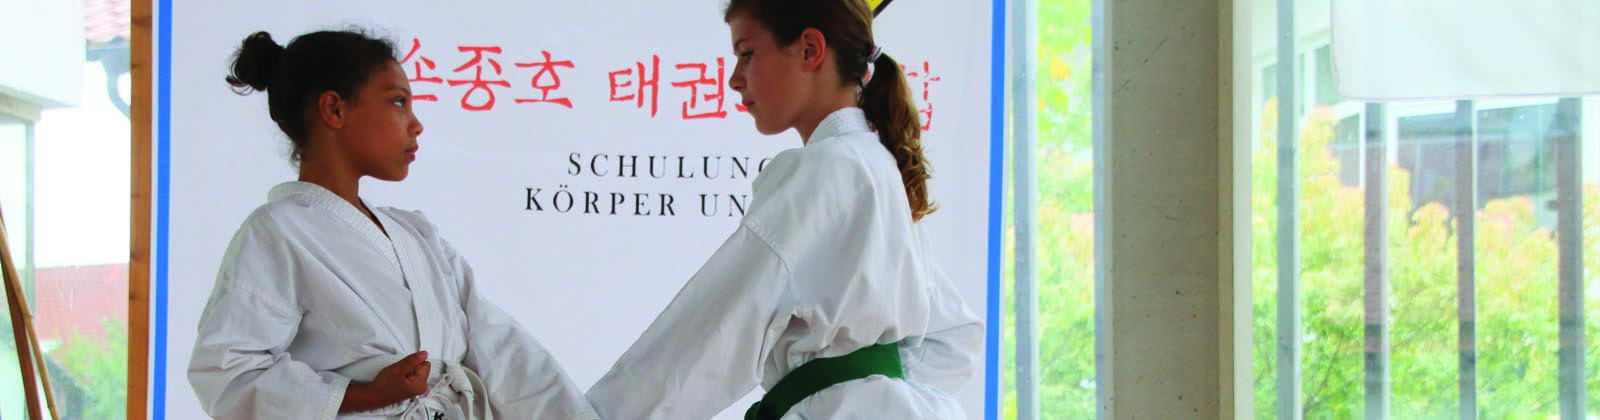 Taekwondo Puchheim Kampfkatzen